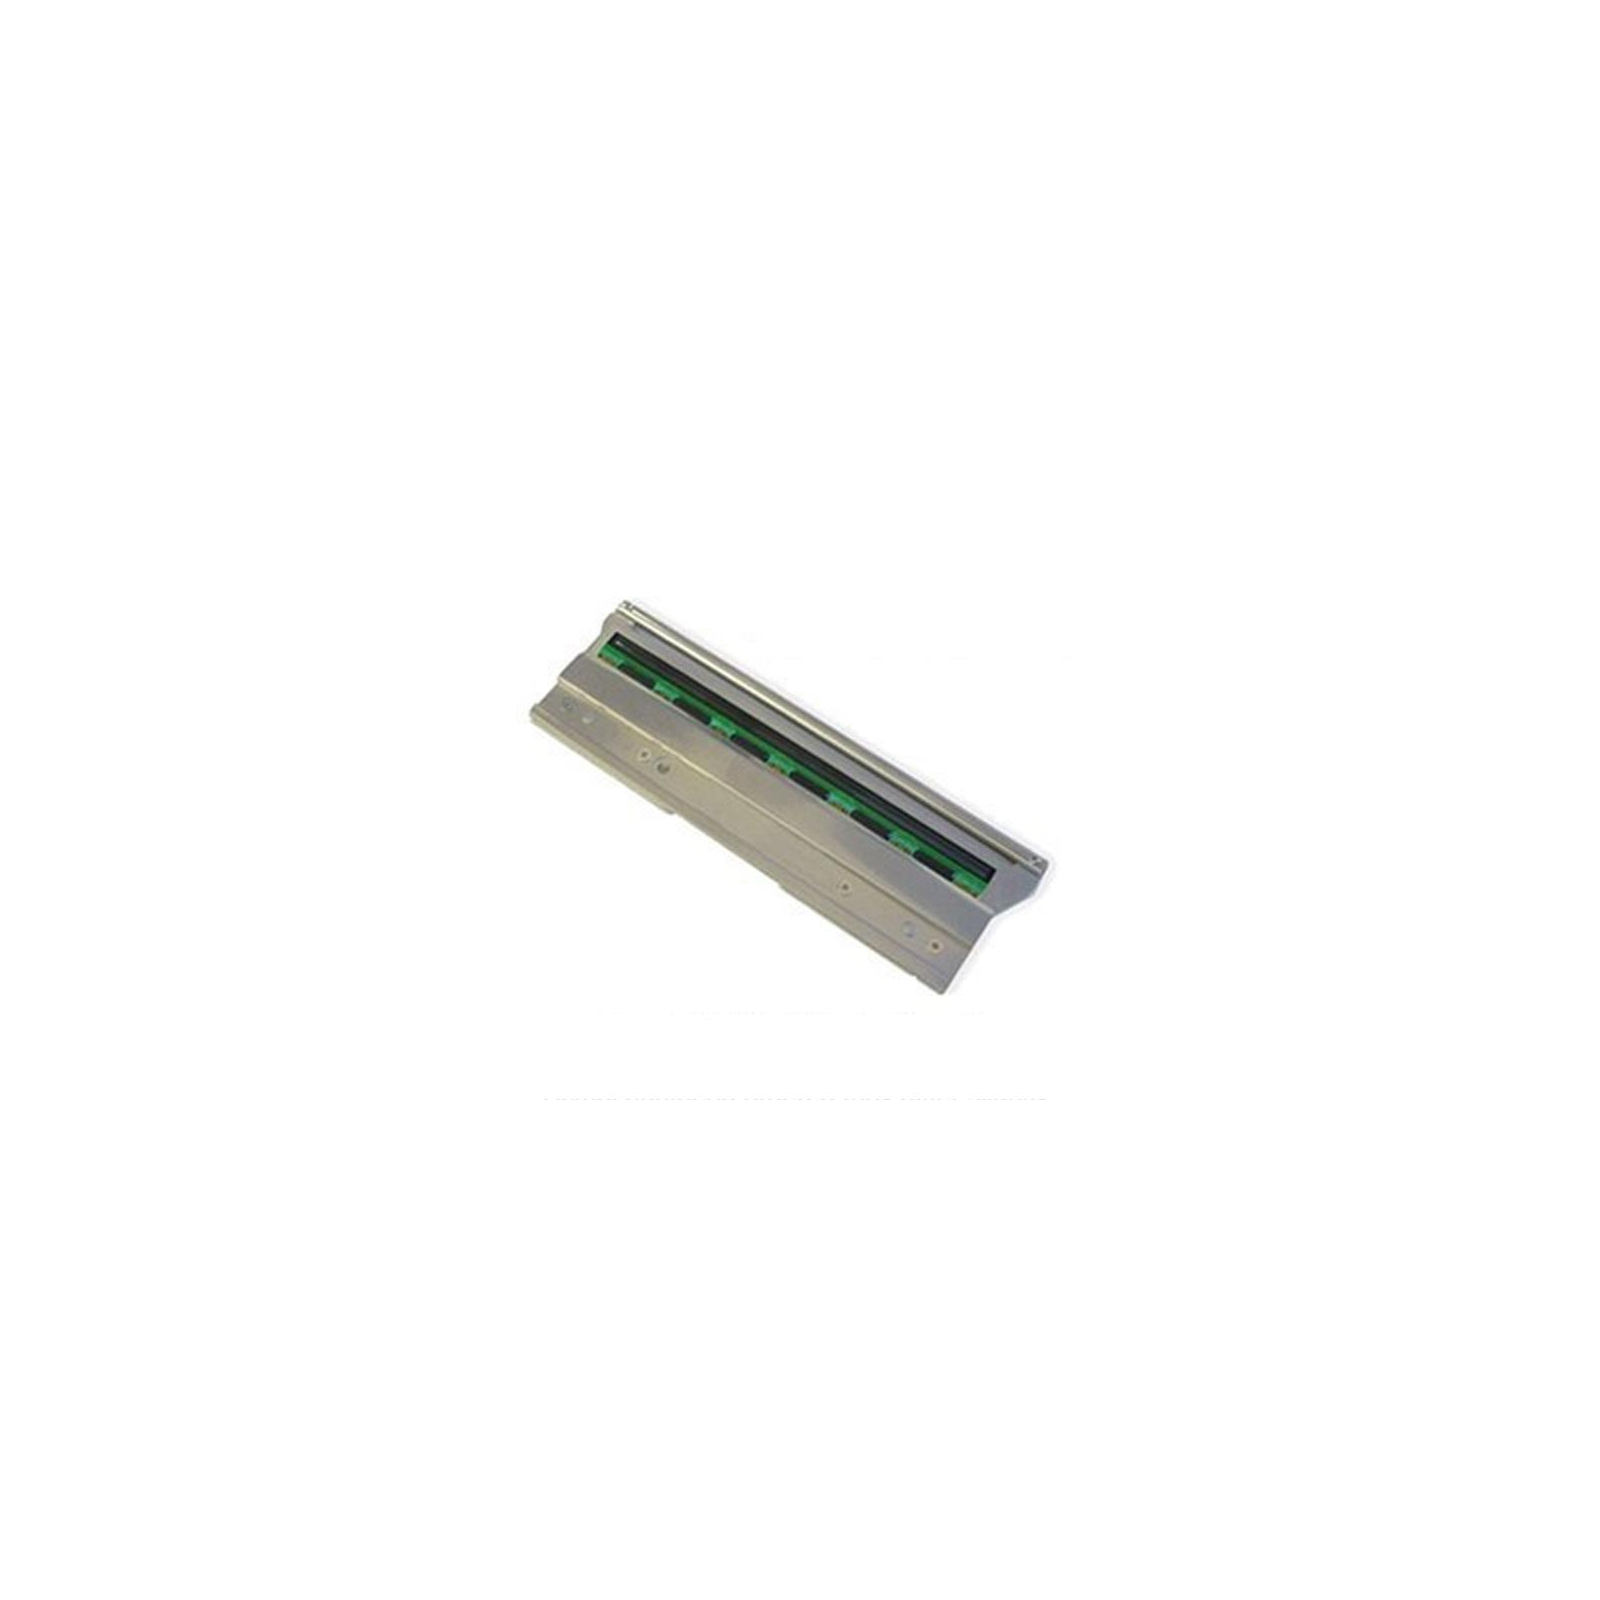 Печатающая головка для термопринтера Citizen CL-S700, 200 dpi (JN09802-0)